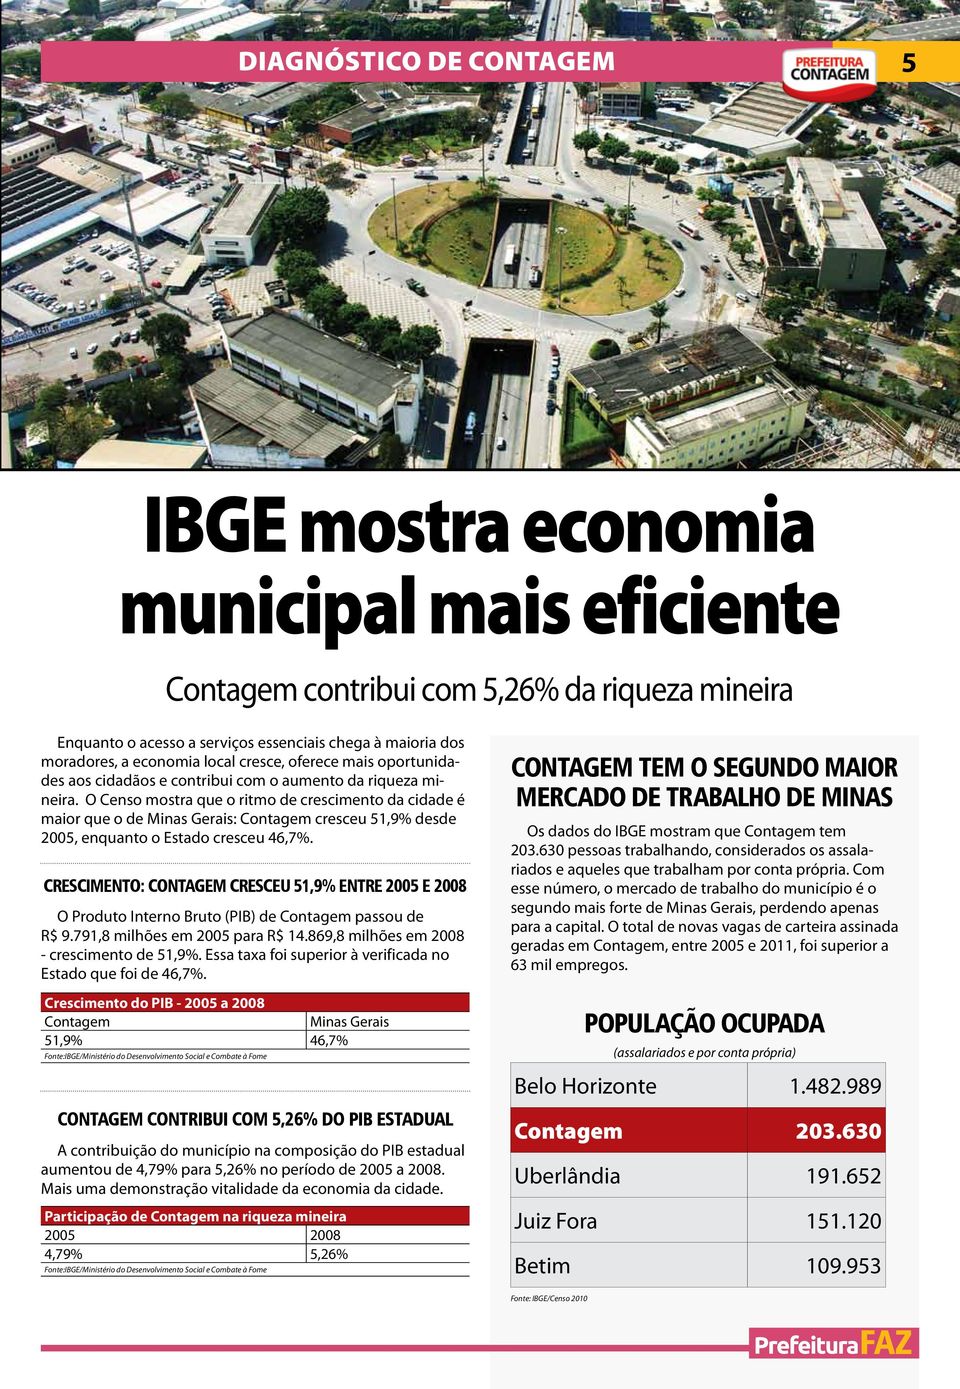 O Censo mostra que o ritmo de crescimento da cidade é maior que o de Minas Gerais: Contagem cresceu 51,9% desde 2005, enquanto o Estado cresceu 46,7%.